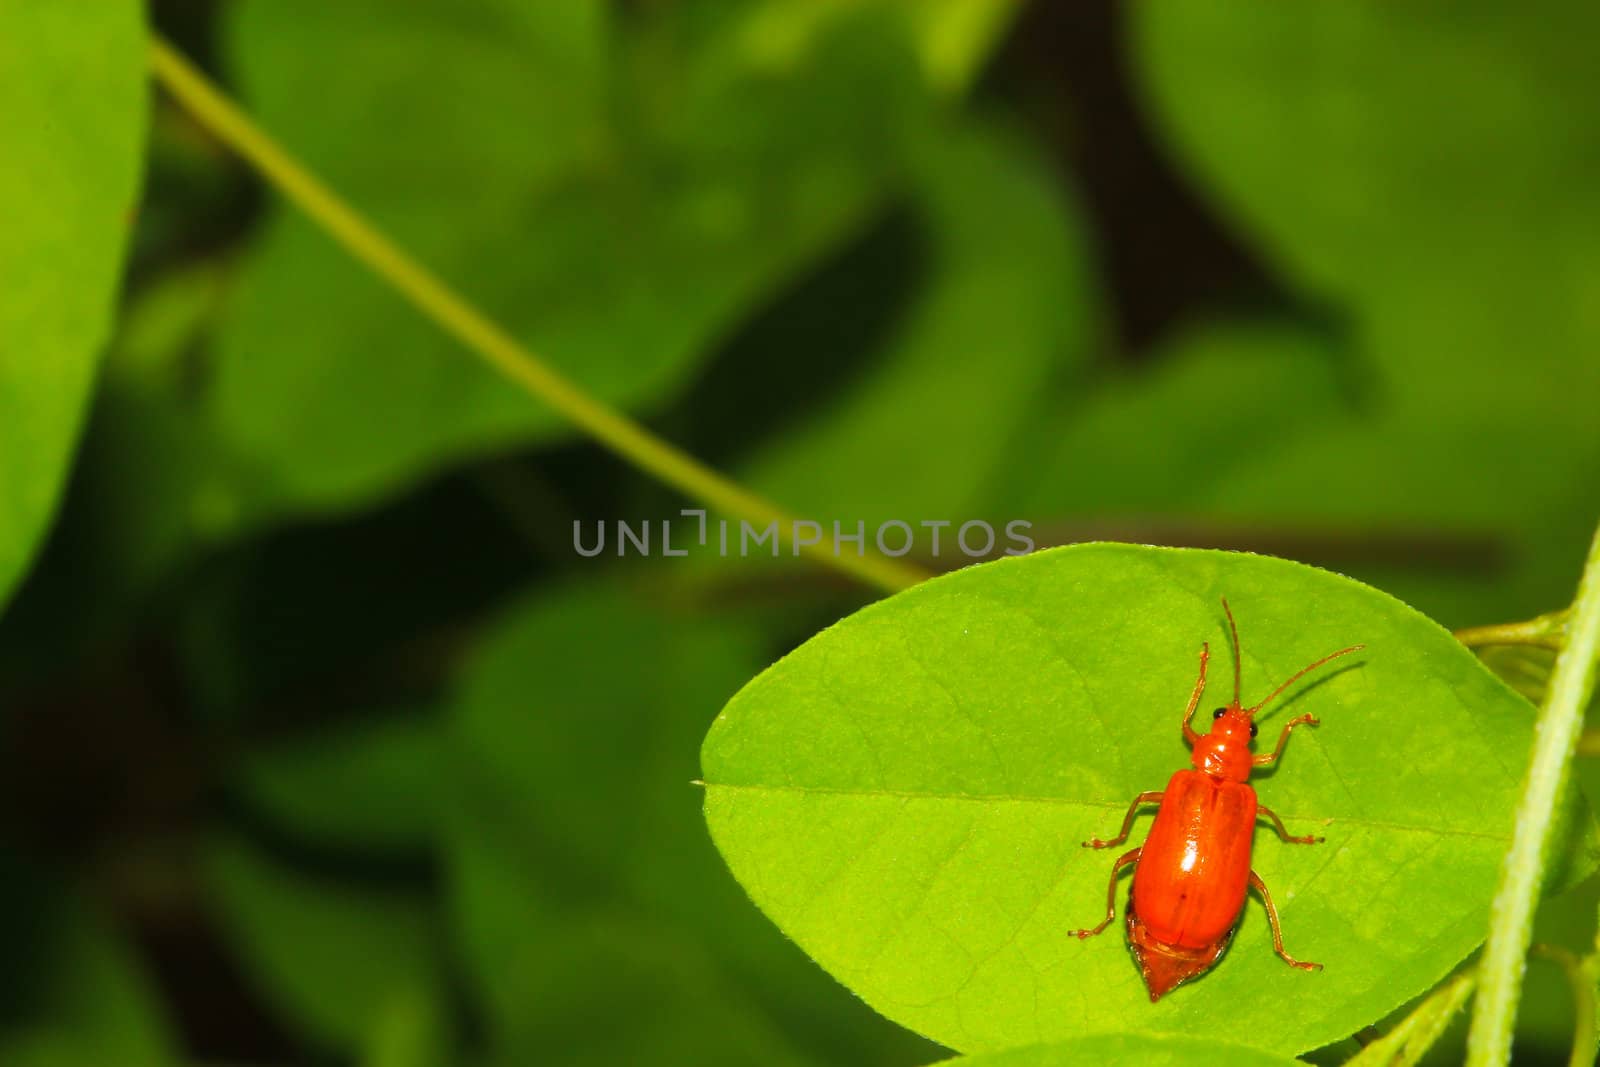 ladybug on a green leaf texture by bajita111122